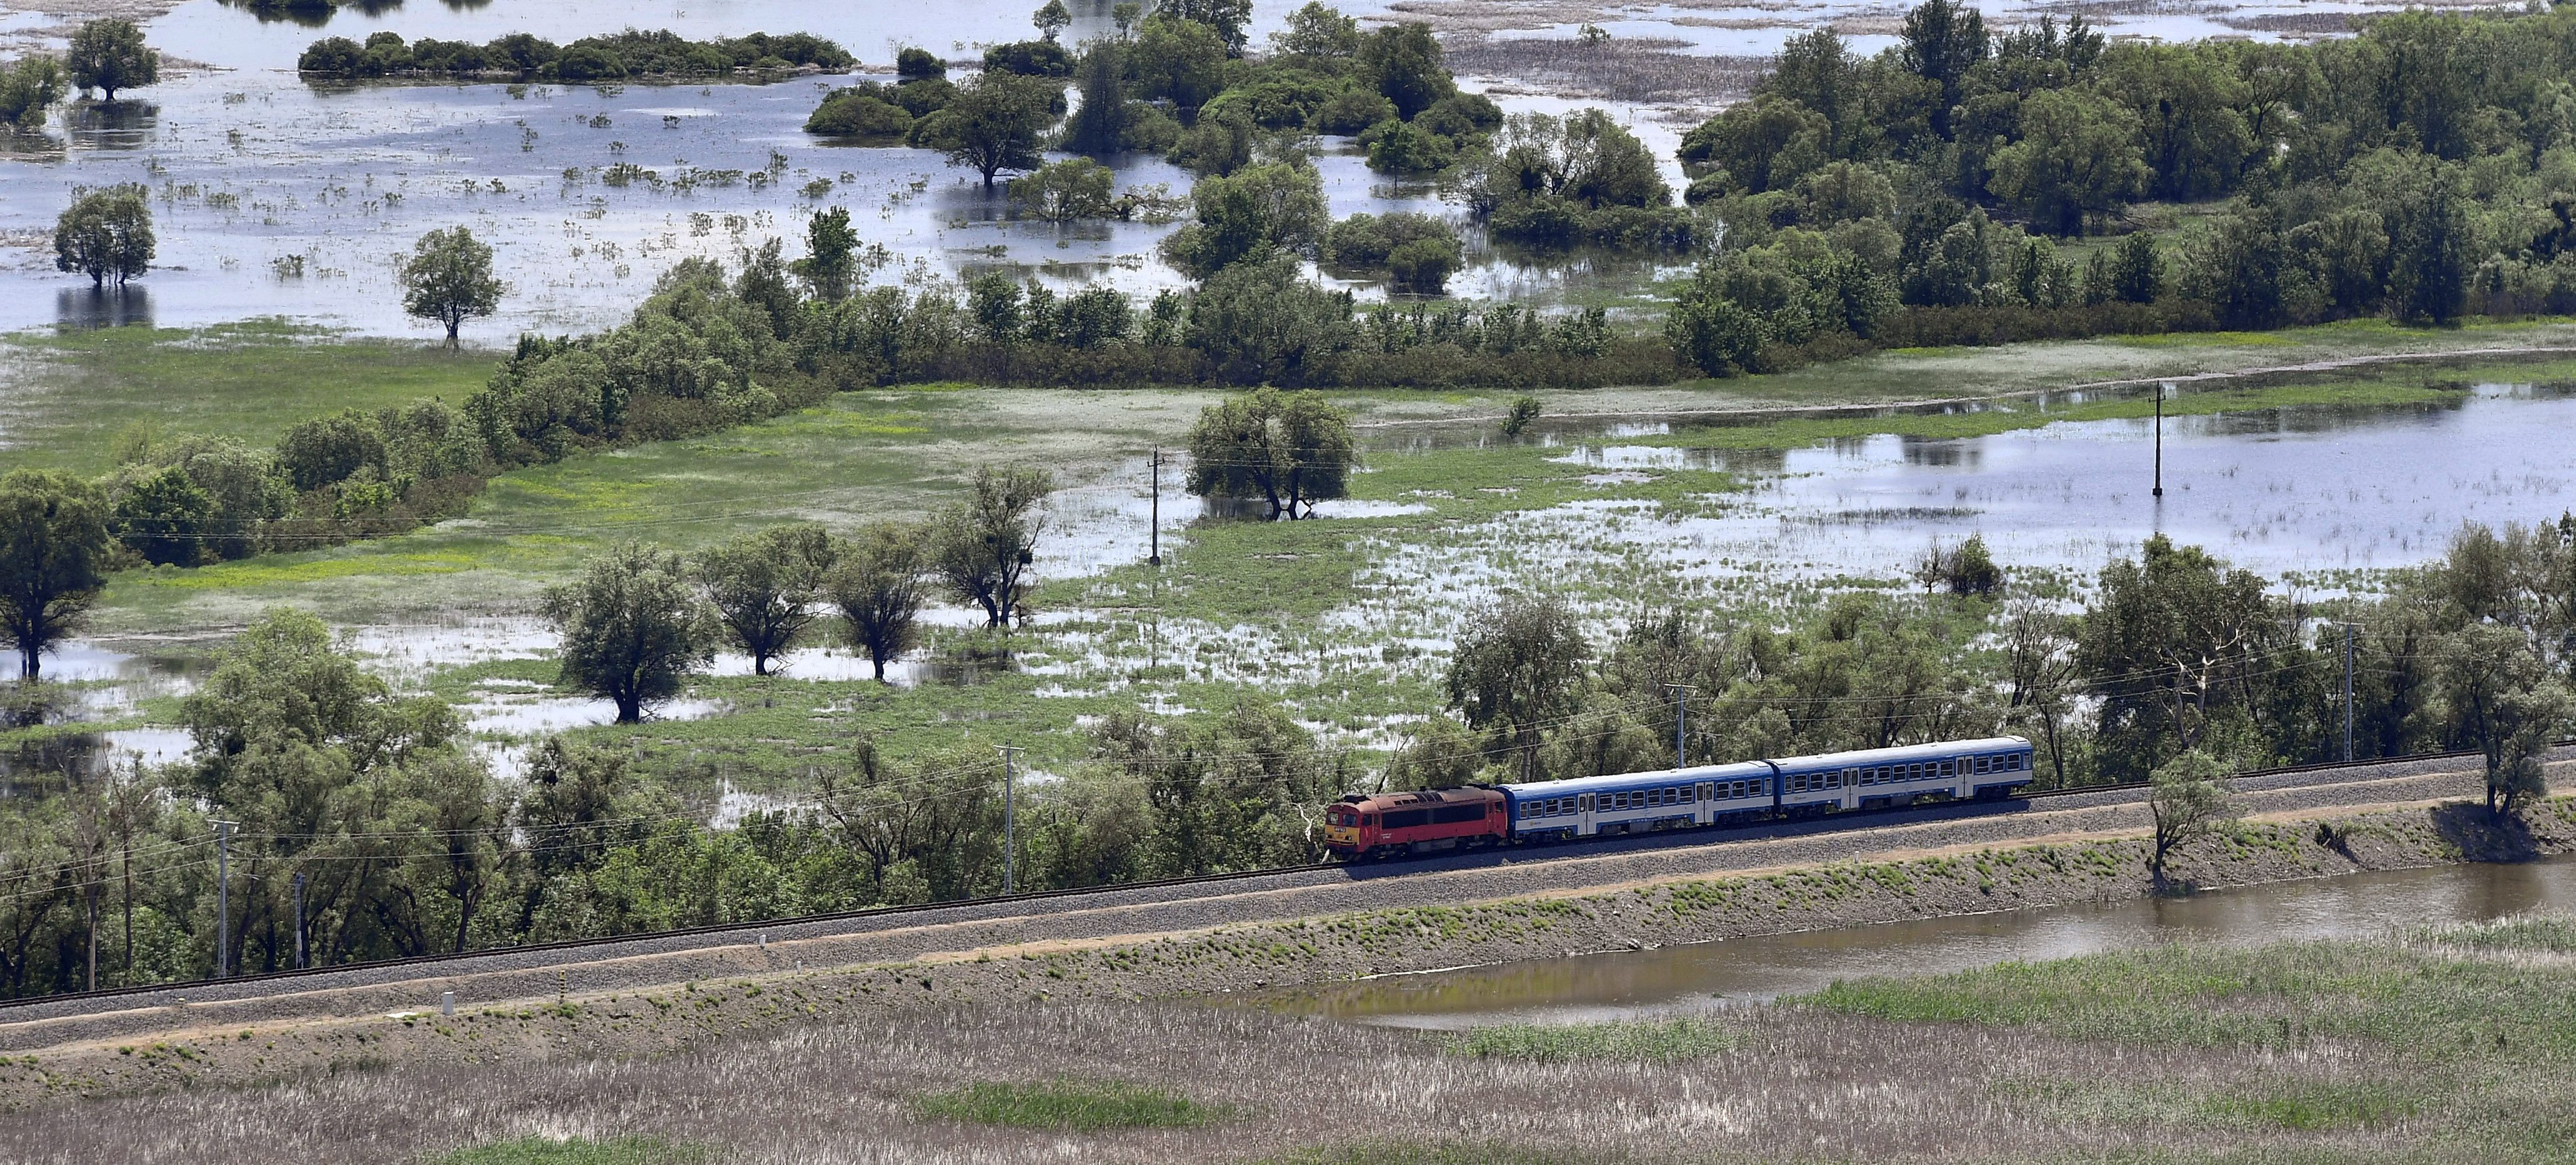 قطار السكك الحديدية المجرية